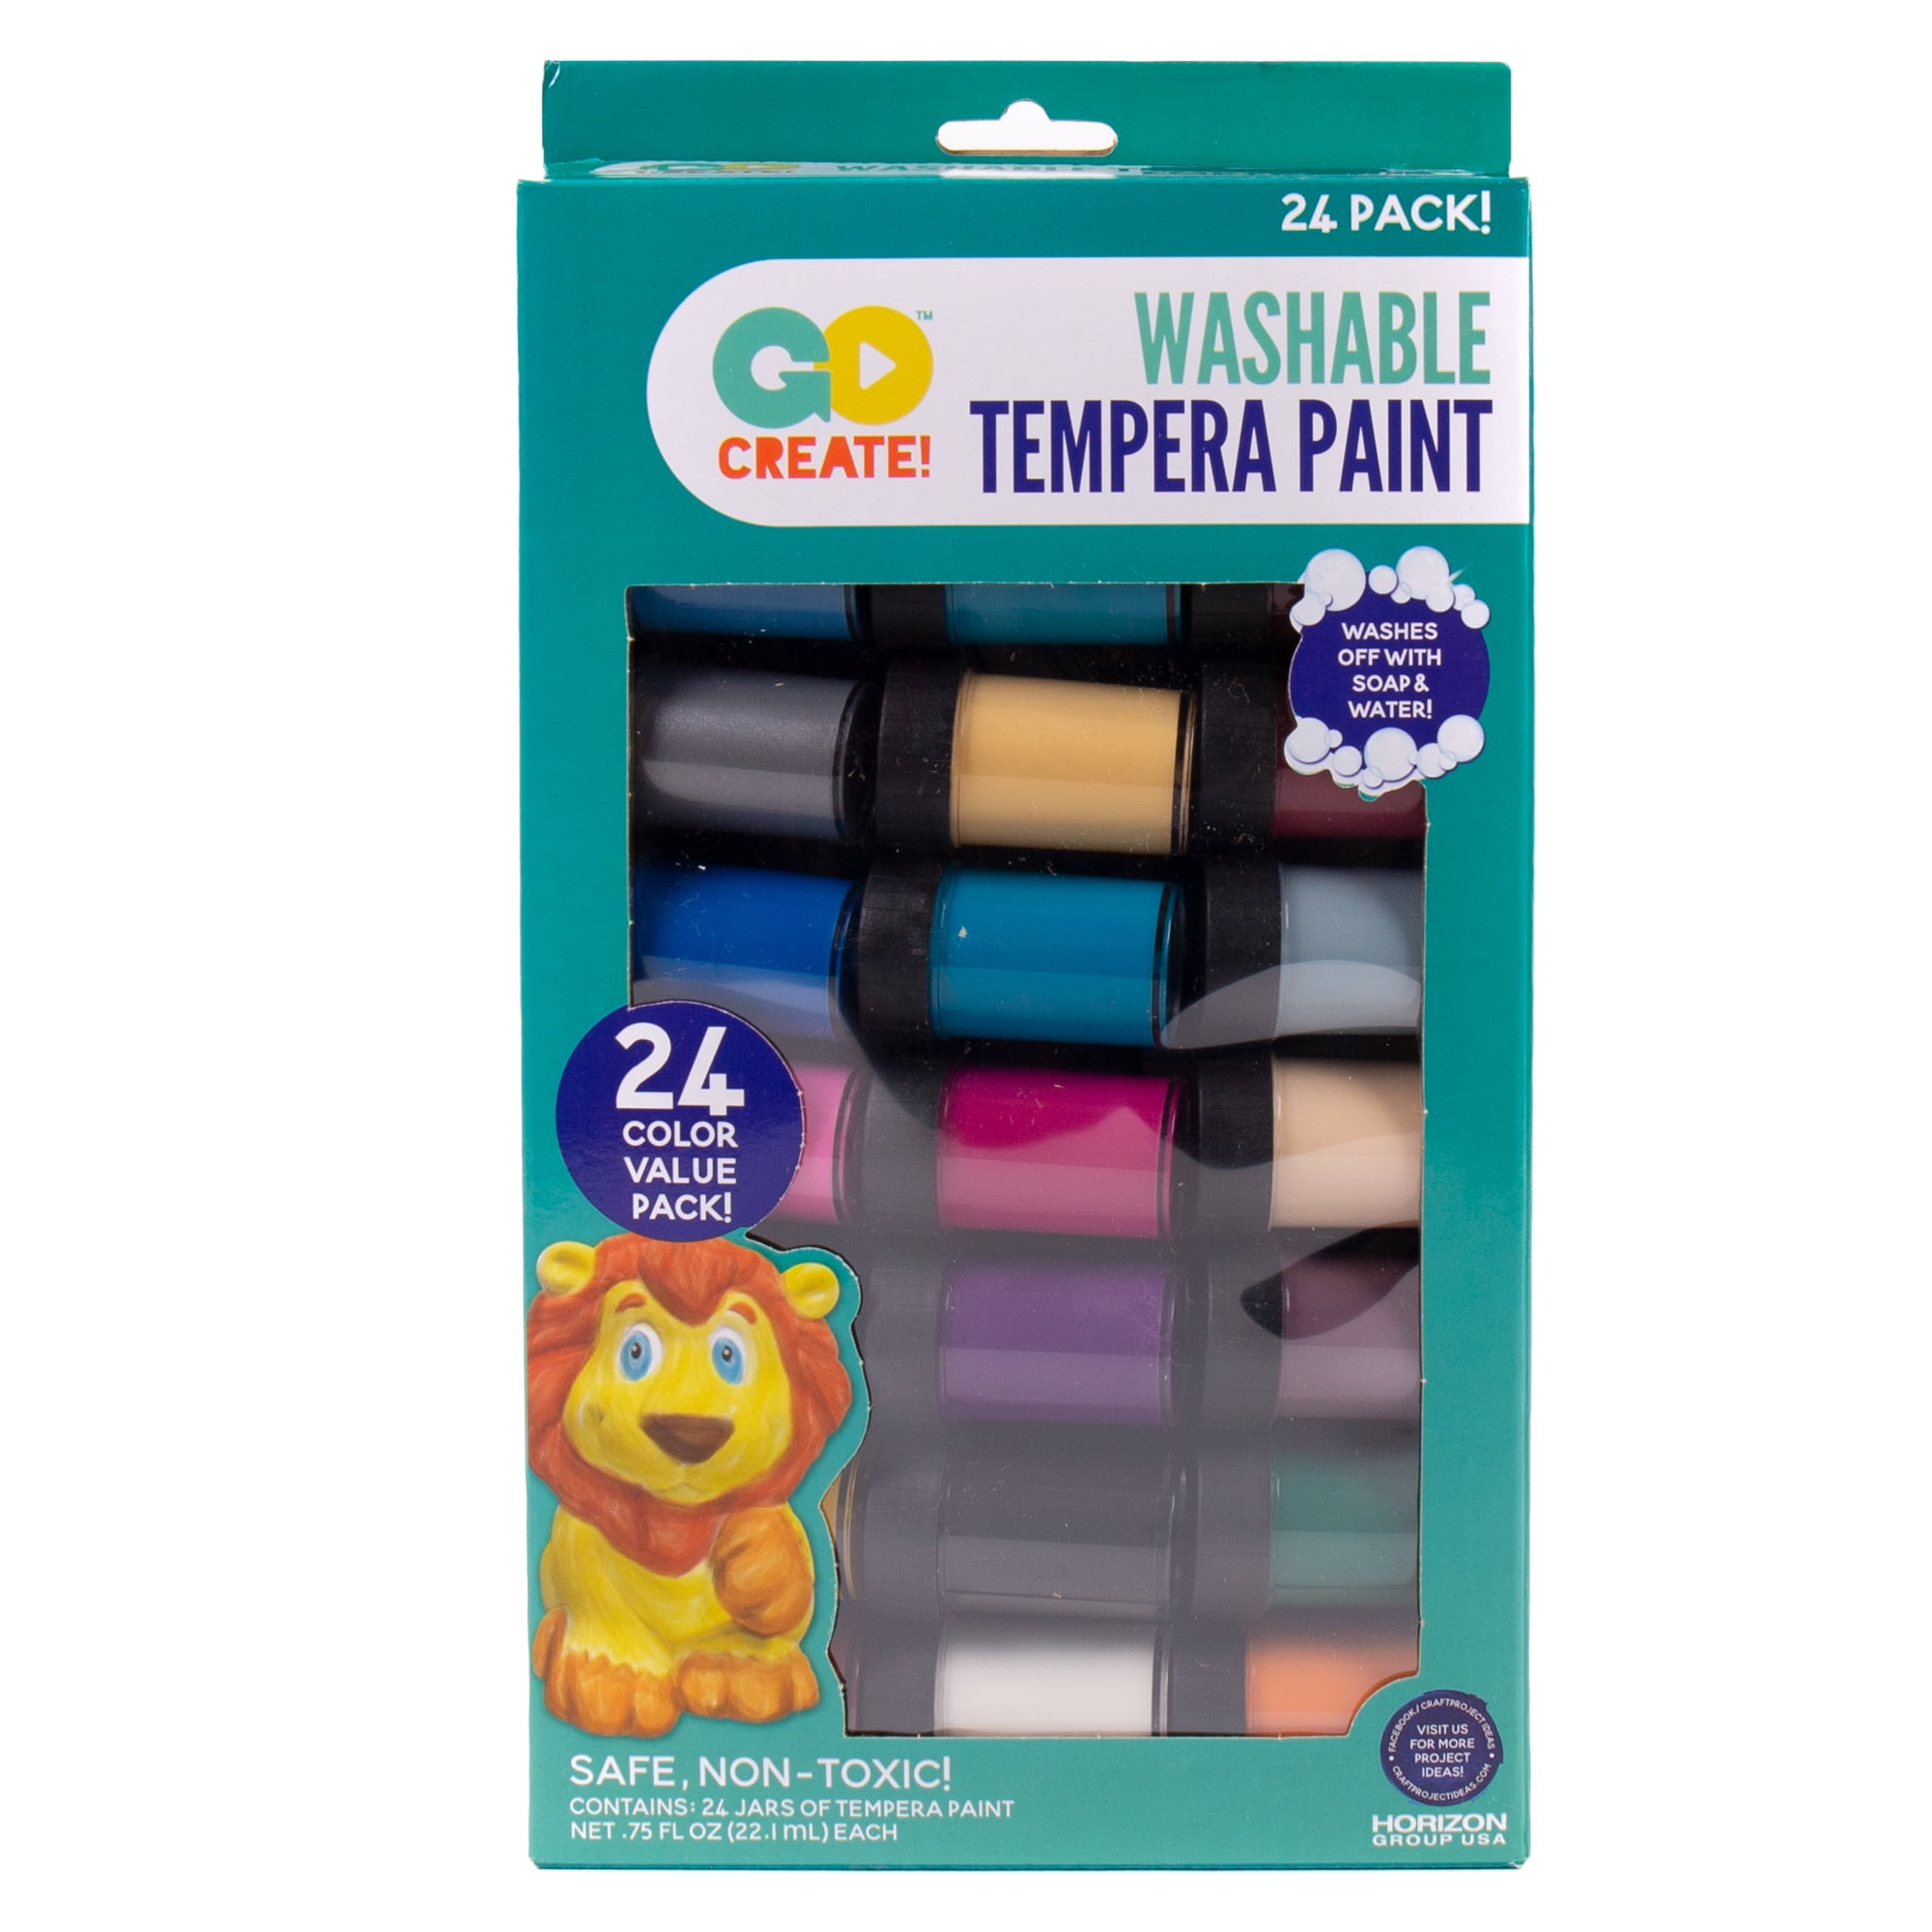 Go Create Washable Tempera Paint Value Pack, 24 Paint Colors